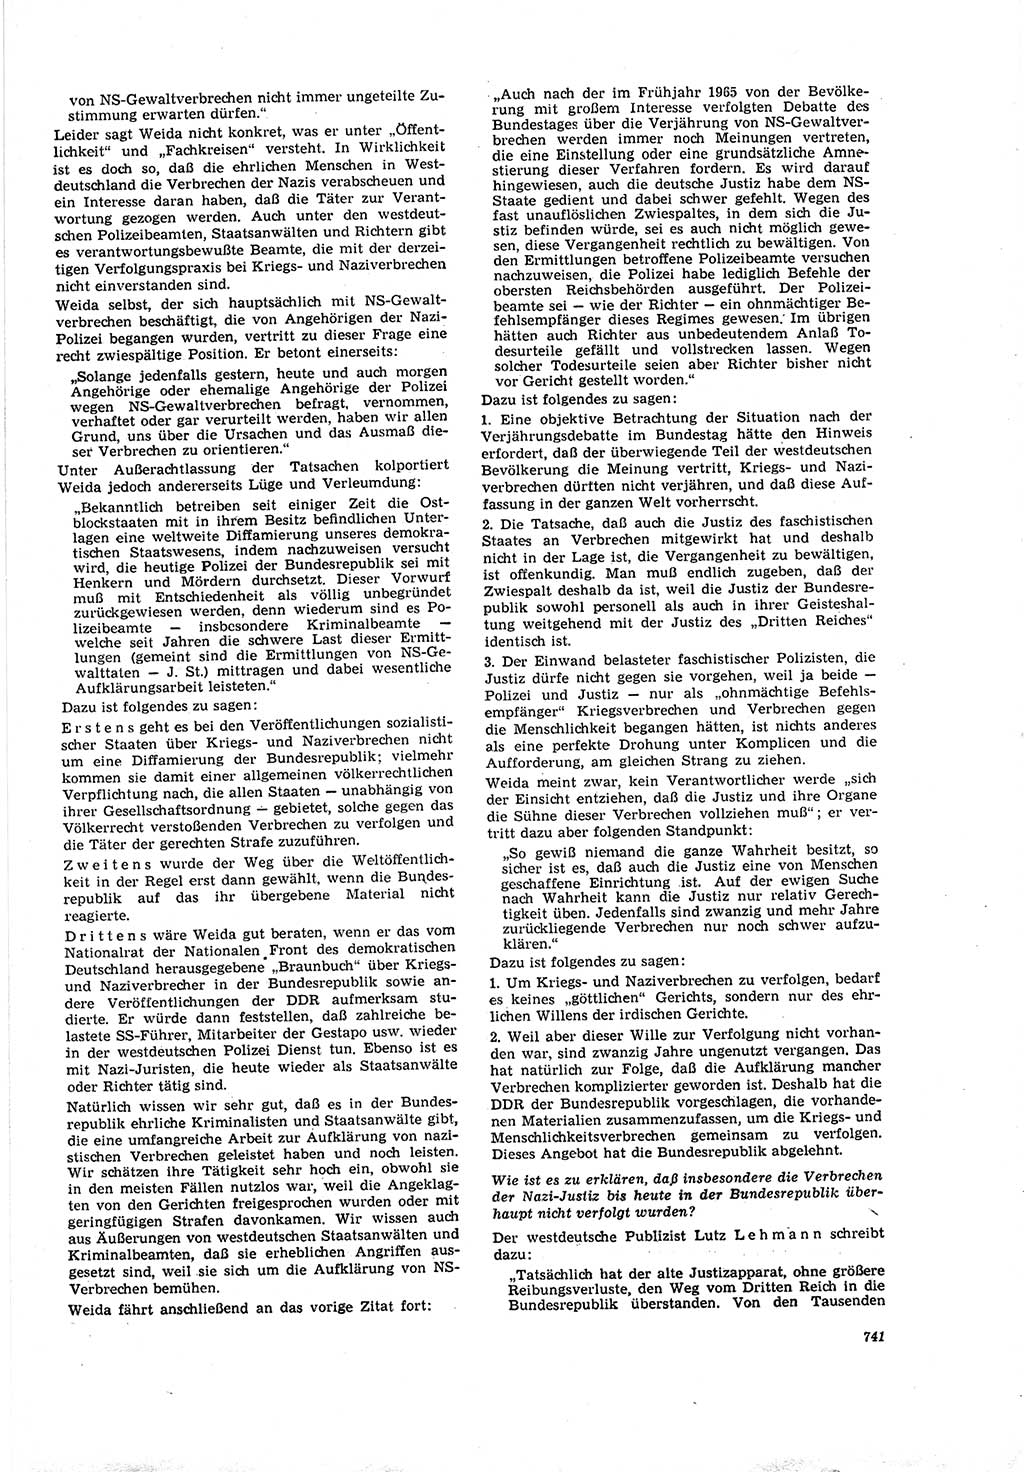 Neue Justiz (NJ), Zeitschrift für Recht und Rechtswissenschaft [Deutsche Demokratische Republik (DDR)], 20. Jahrgang 1966, Seite 741 (NJ DDR 1966, S. 741)